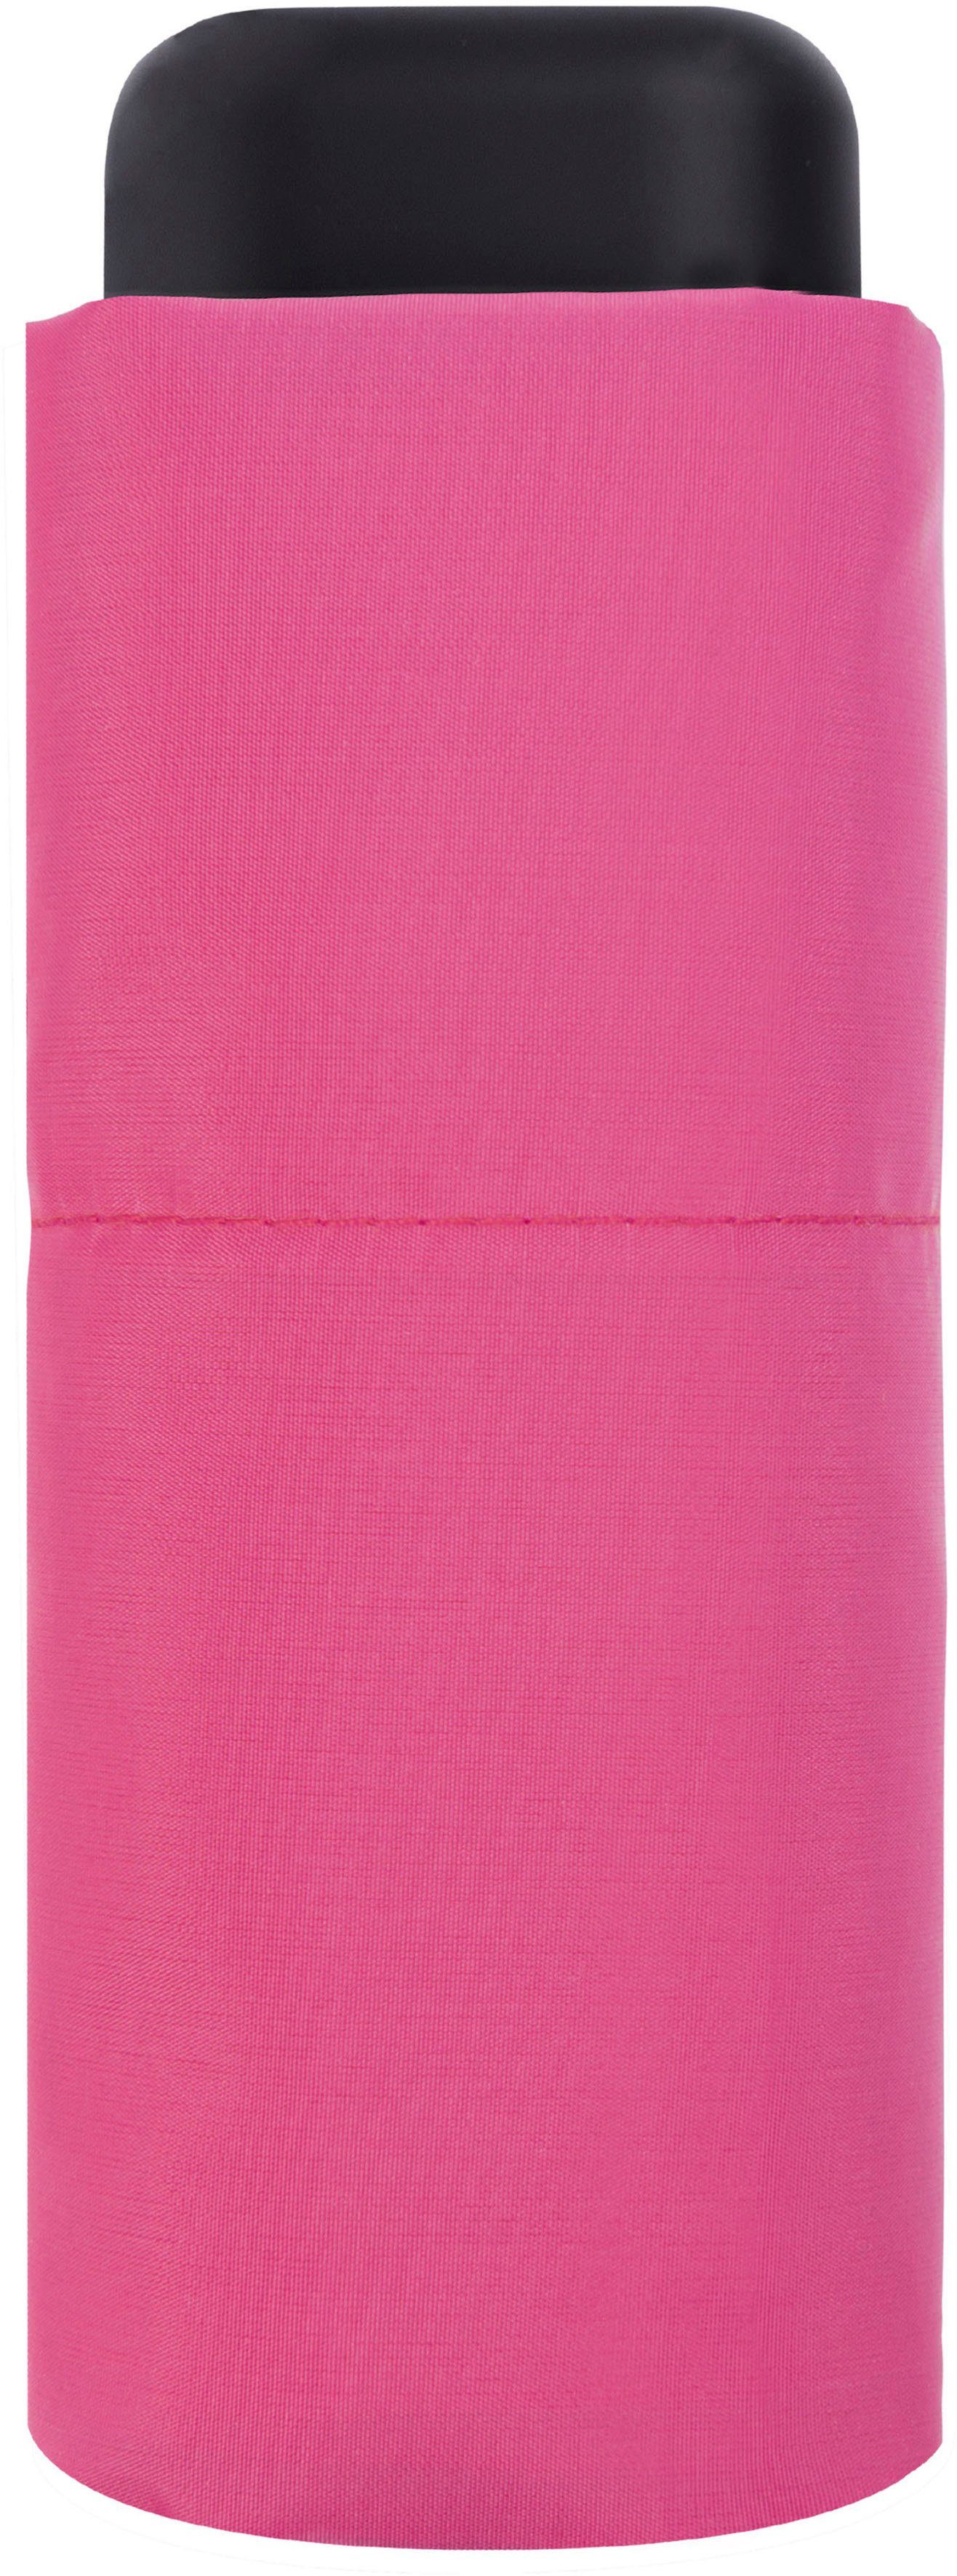 derby pink Taschenregenschirm Micro Slim,